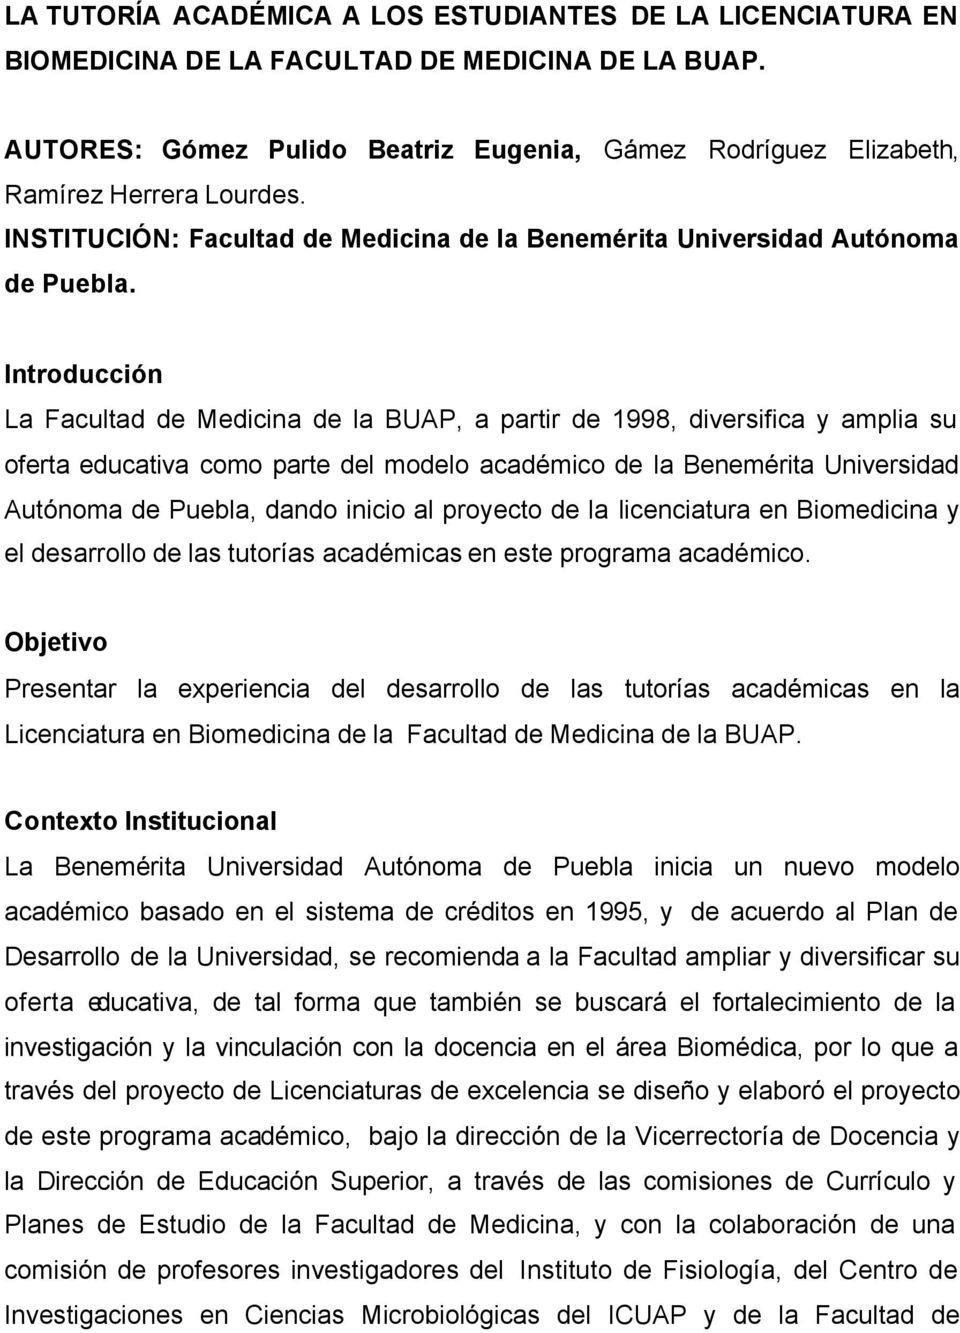 Introducción La Facultad de Medicina de la BUAP, a partir de 1998, diversifica y amplia su oferta educativa como parte del modelo académico de la Benemérita Universidad Autónoma de Puebla, dando